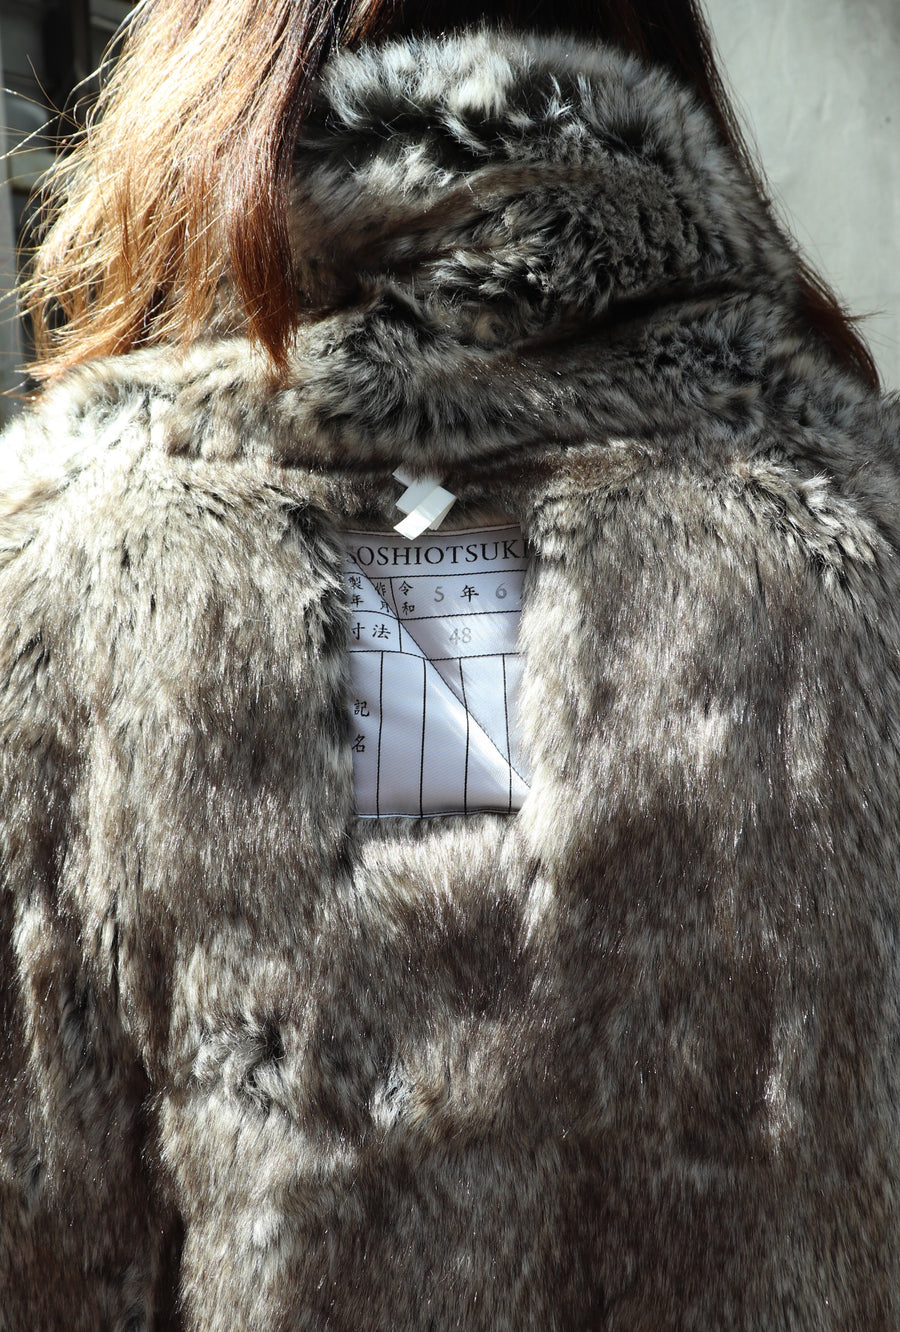 soduk fake fur jacket / kudos ファー - 毛皮/ファーコート